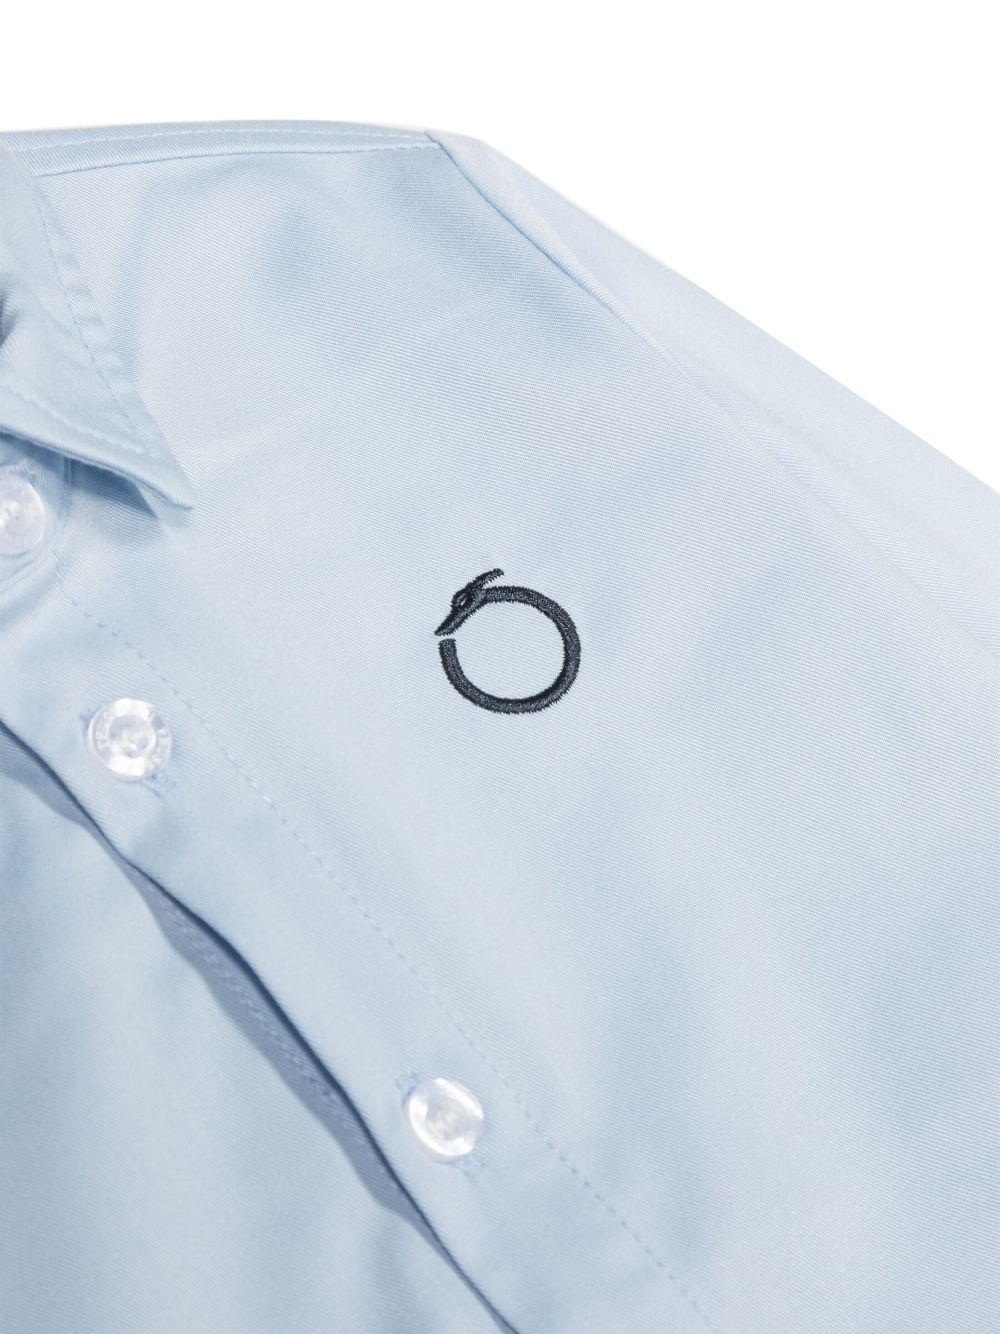 Camicia blu fiordaliso unisex con ricamo